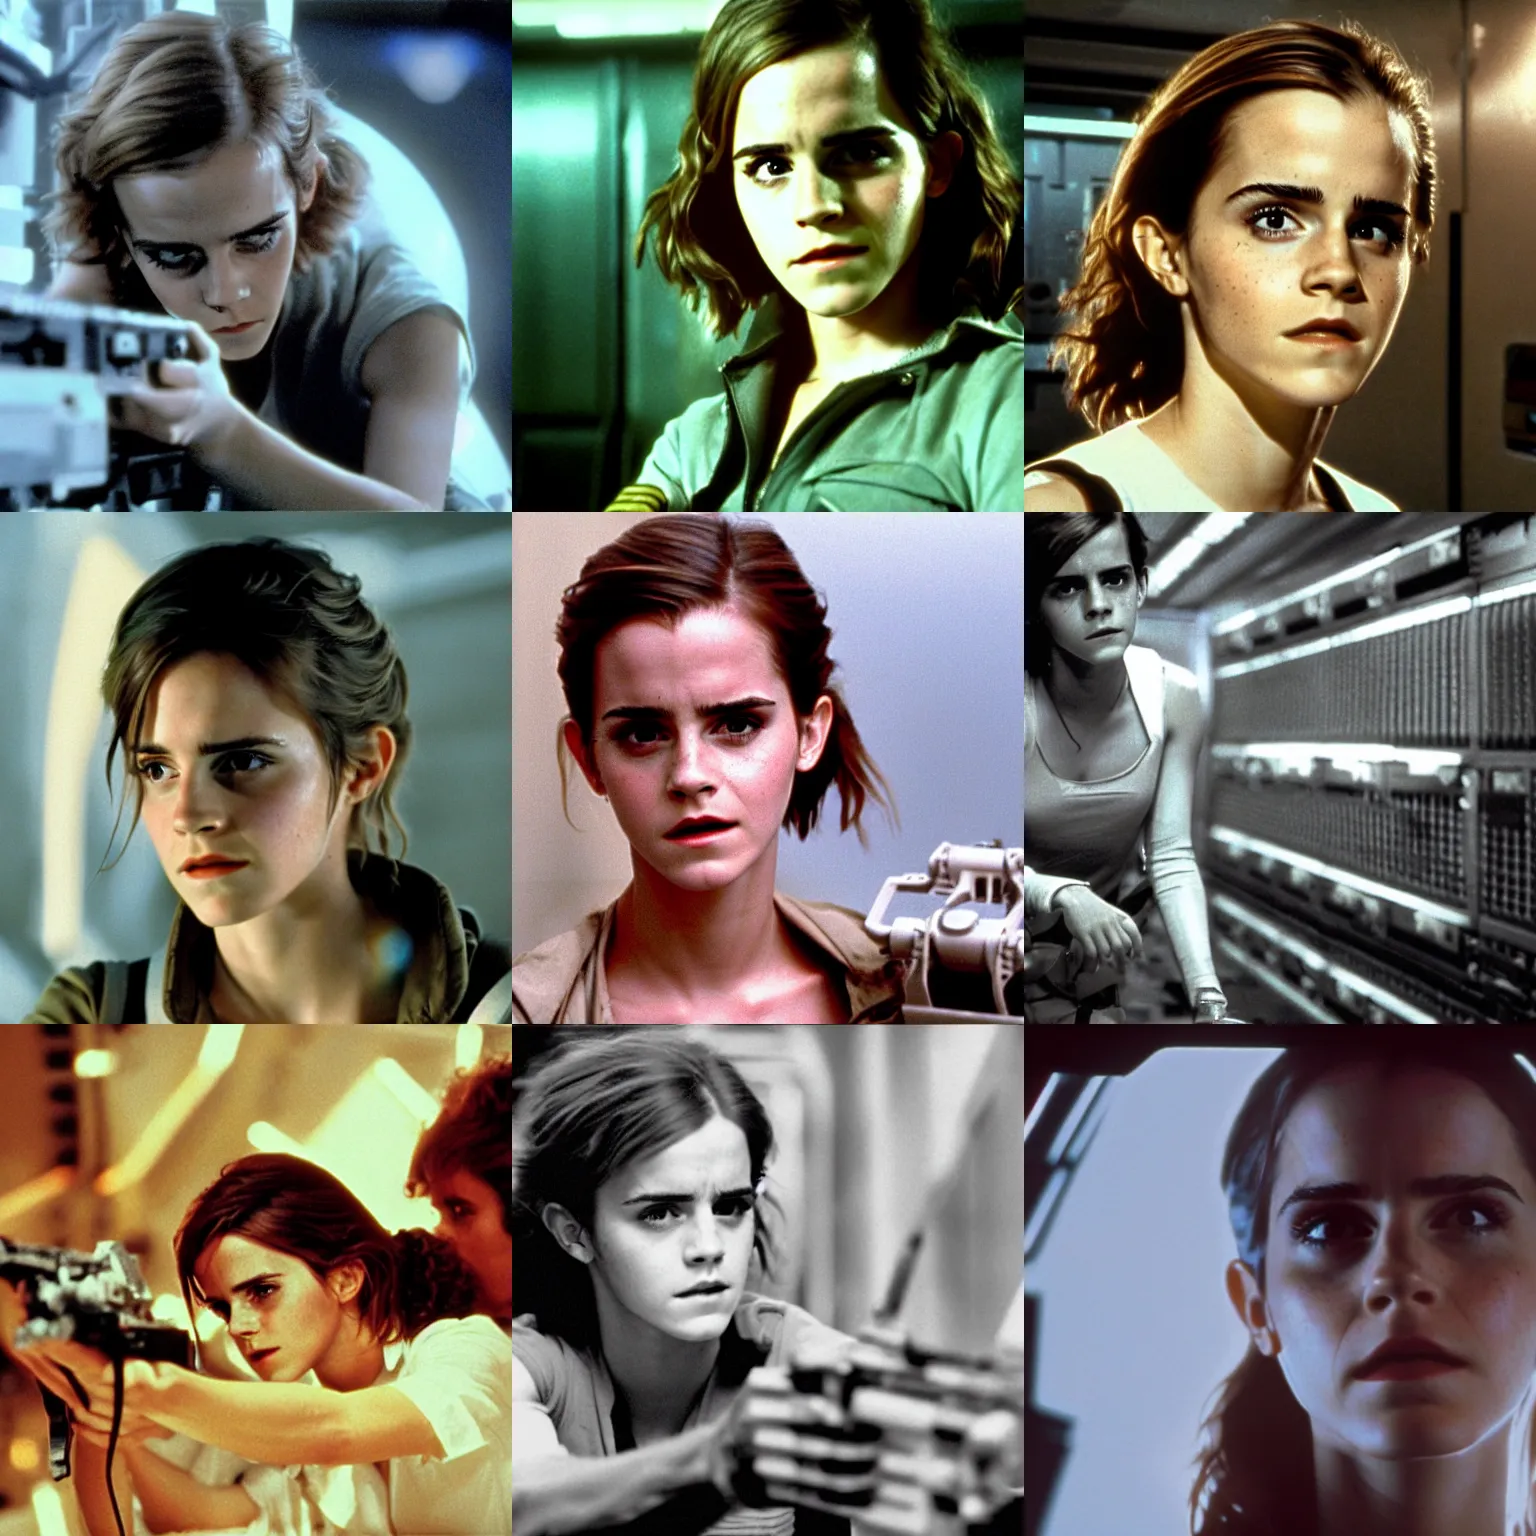 Prompt: film still of Emma Watson as Ripley in final scene scene in Alien 1979, 4k